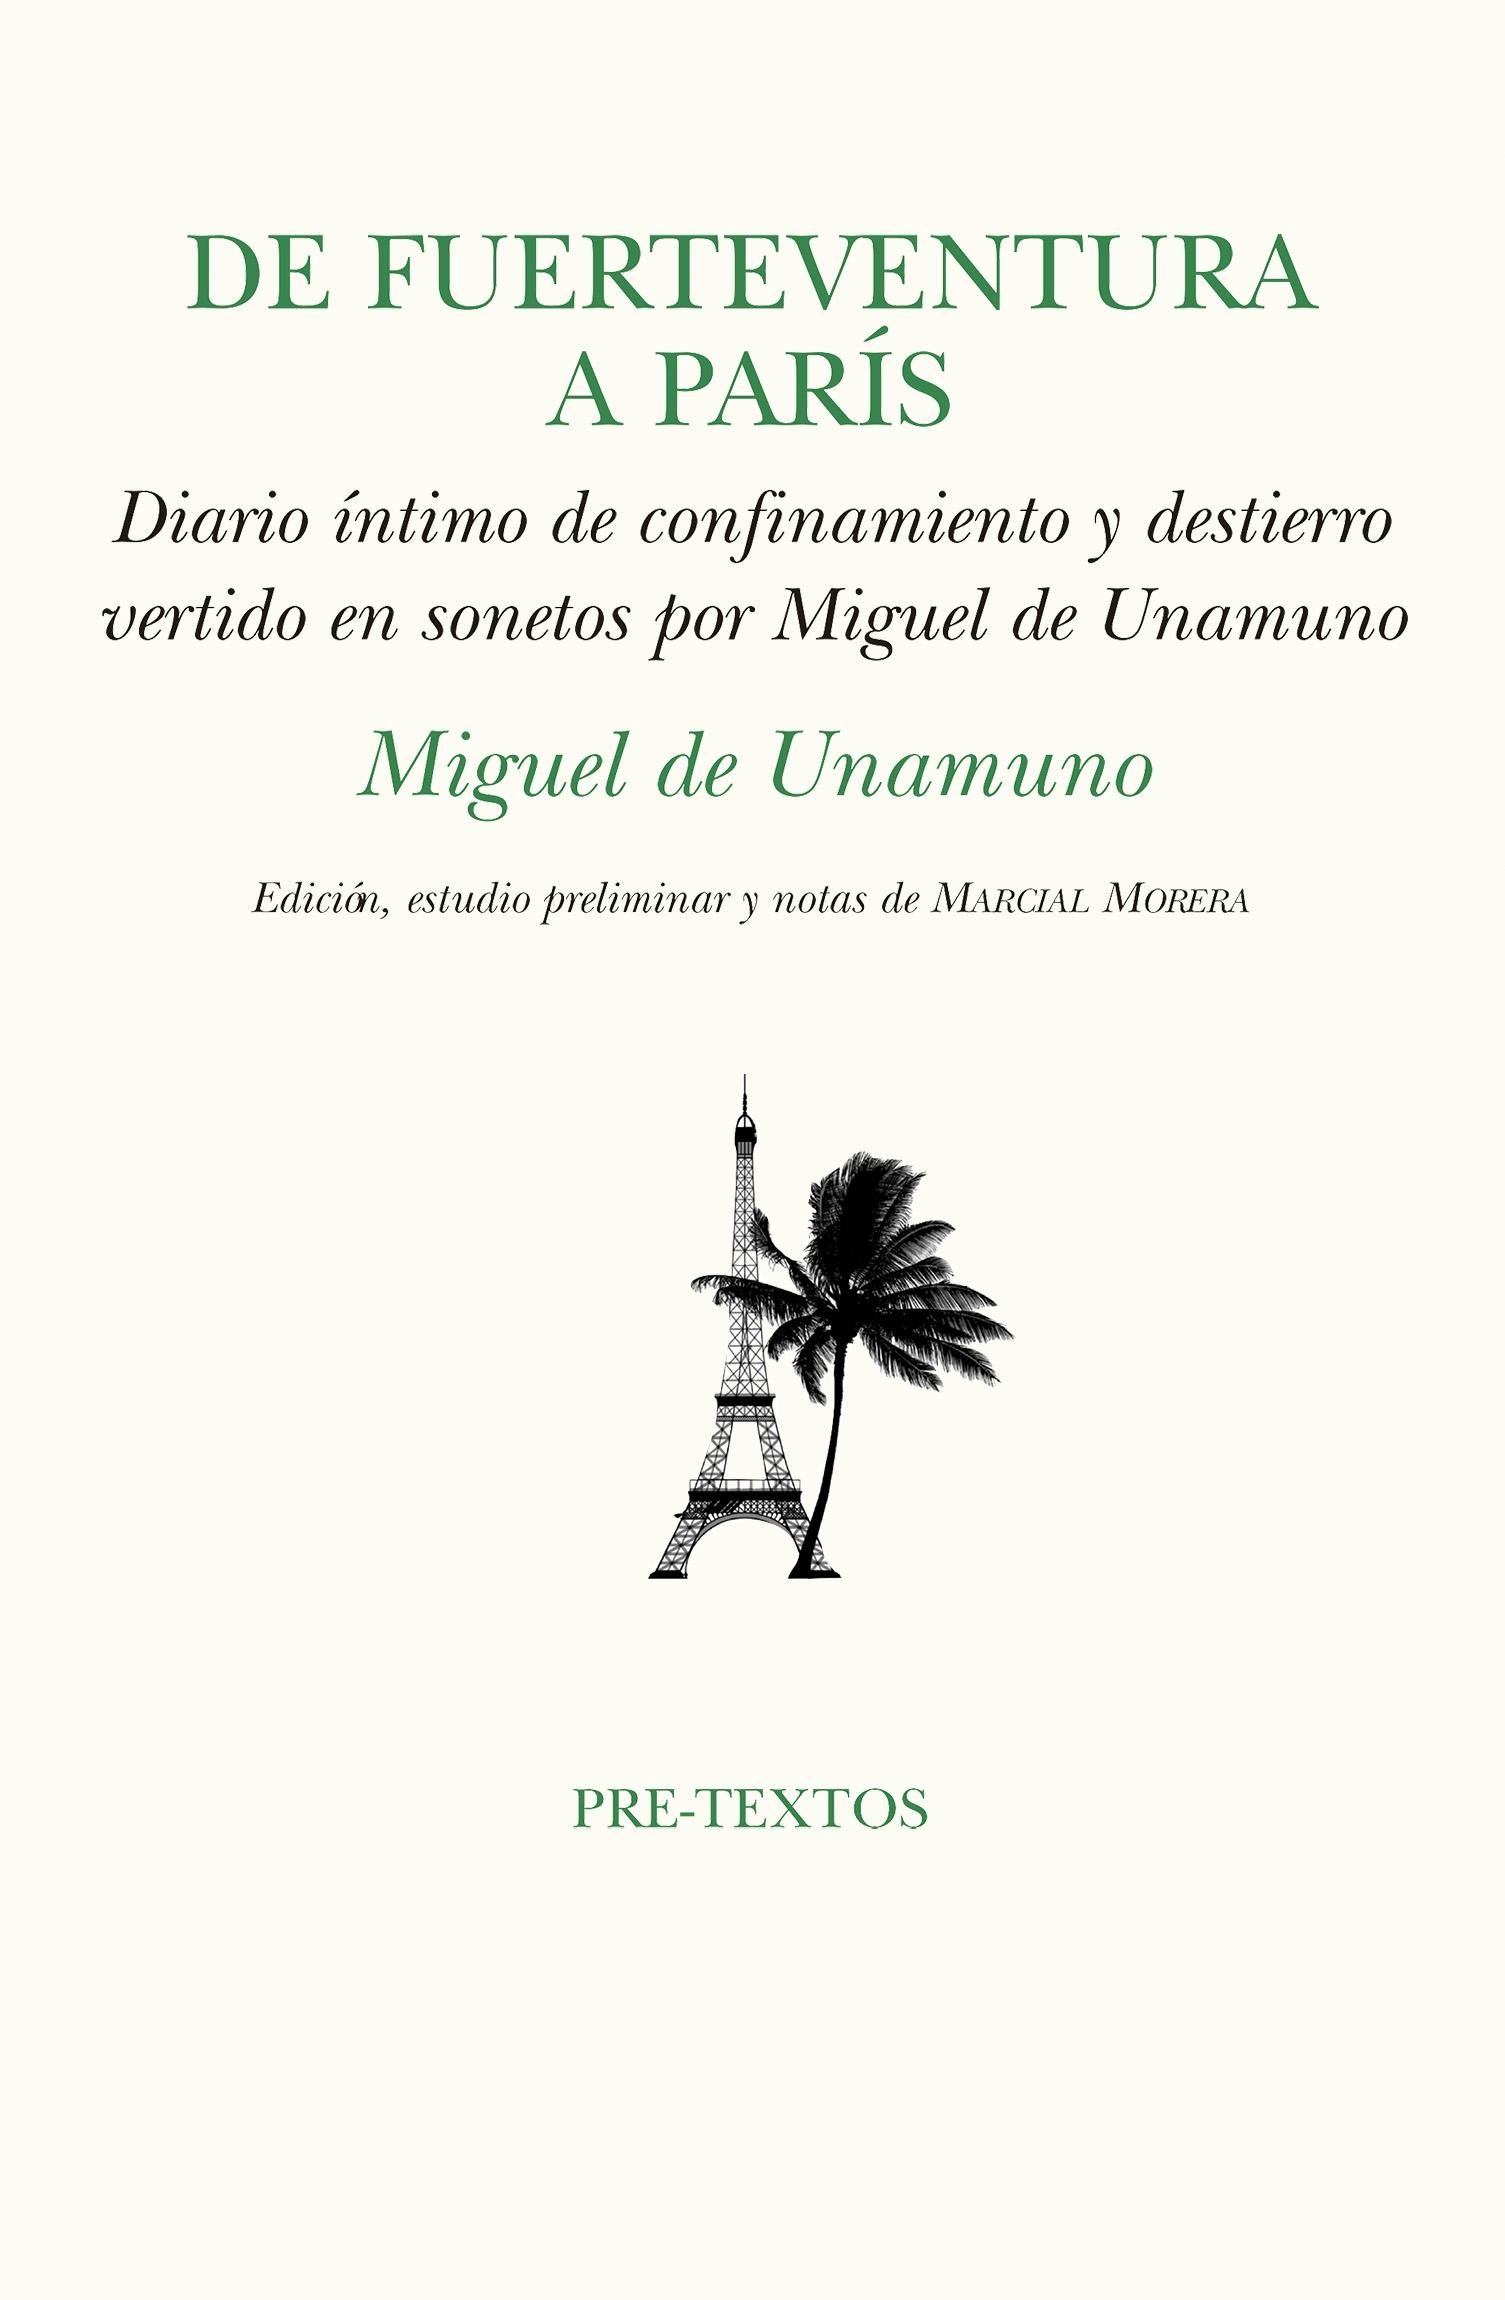 De Fuerteventura a París "confinamiento y destierro vertido en sonetos por Miguel de Unamuno"